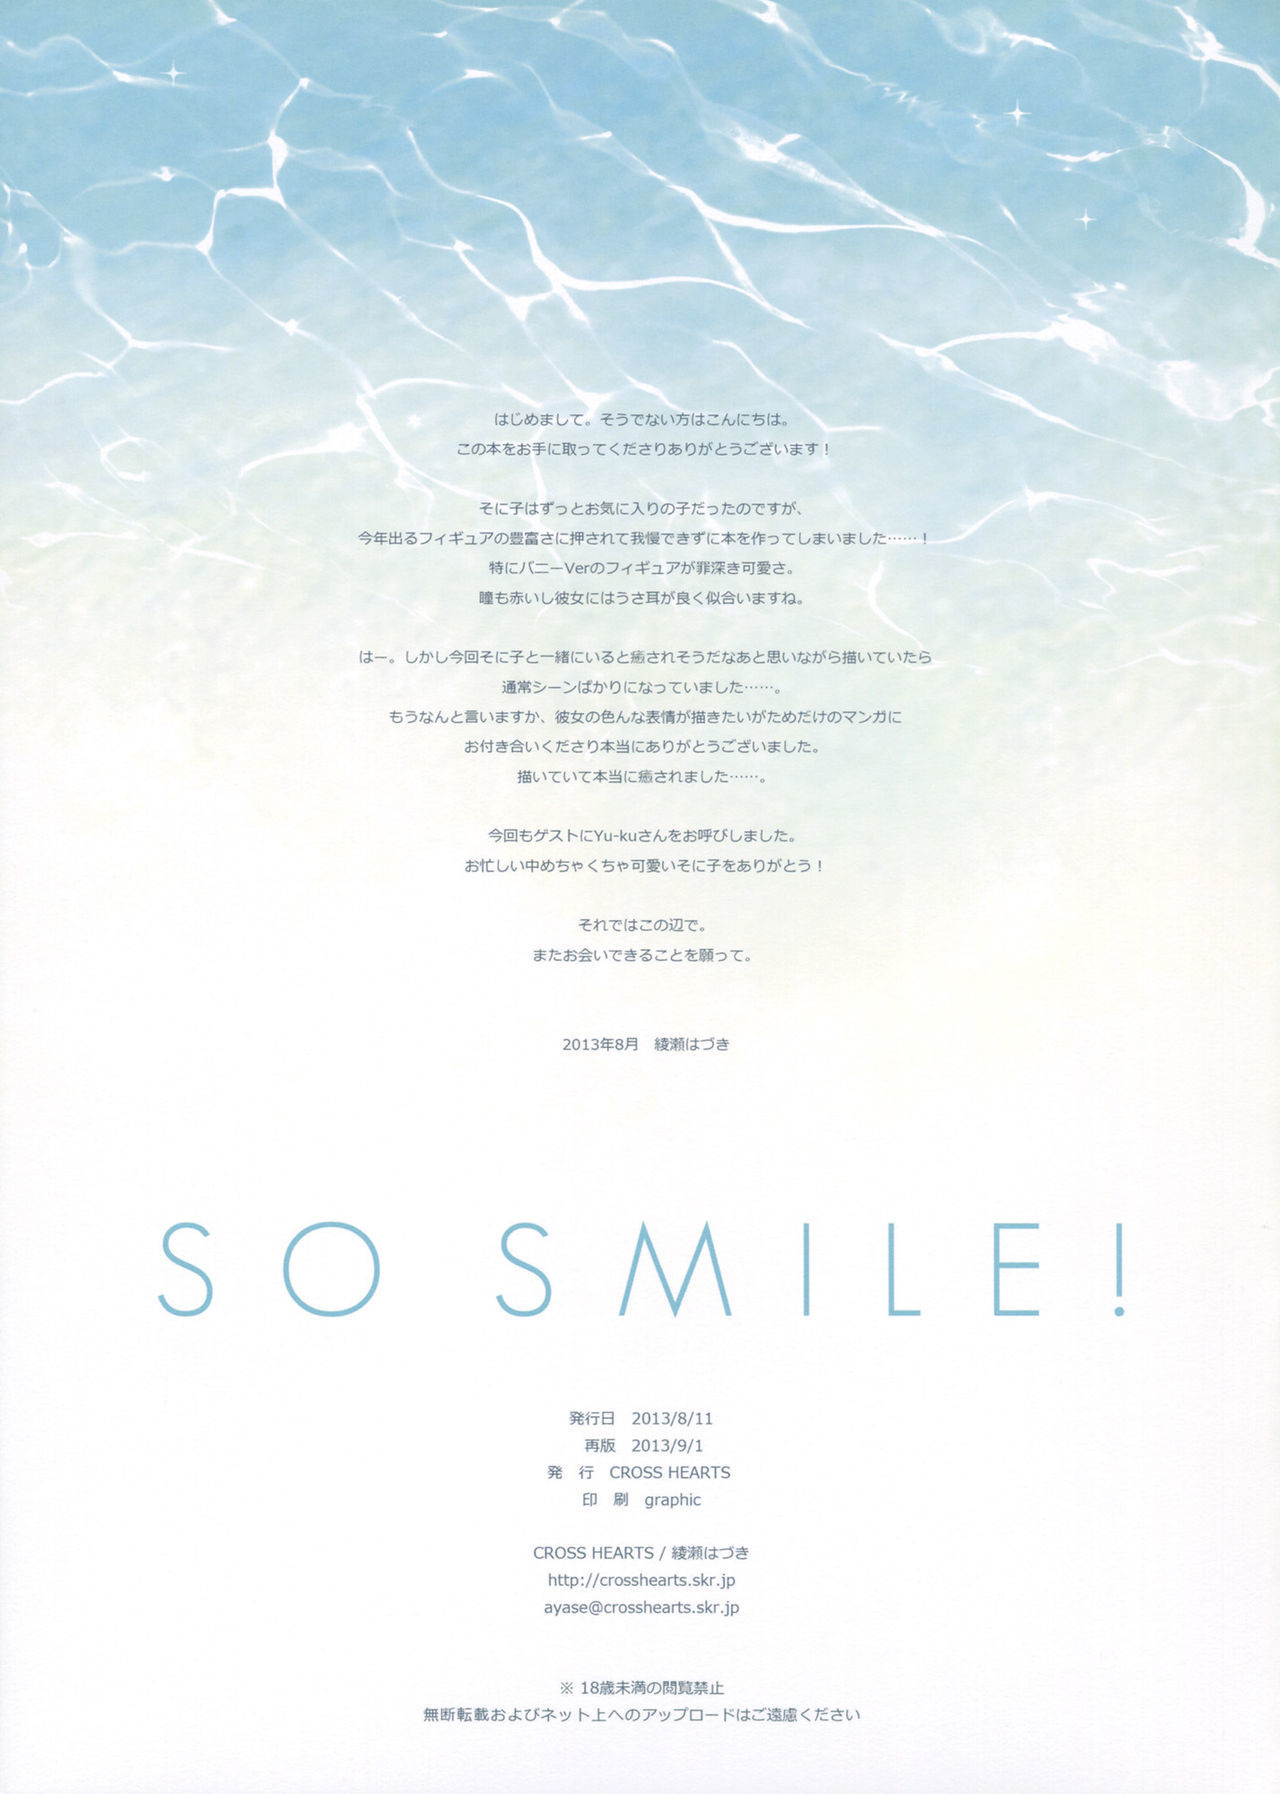 [cross kalpler (ayase hazuki)] Yani smile! (super sonico) [2013 09 01] [smdc]